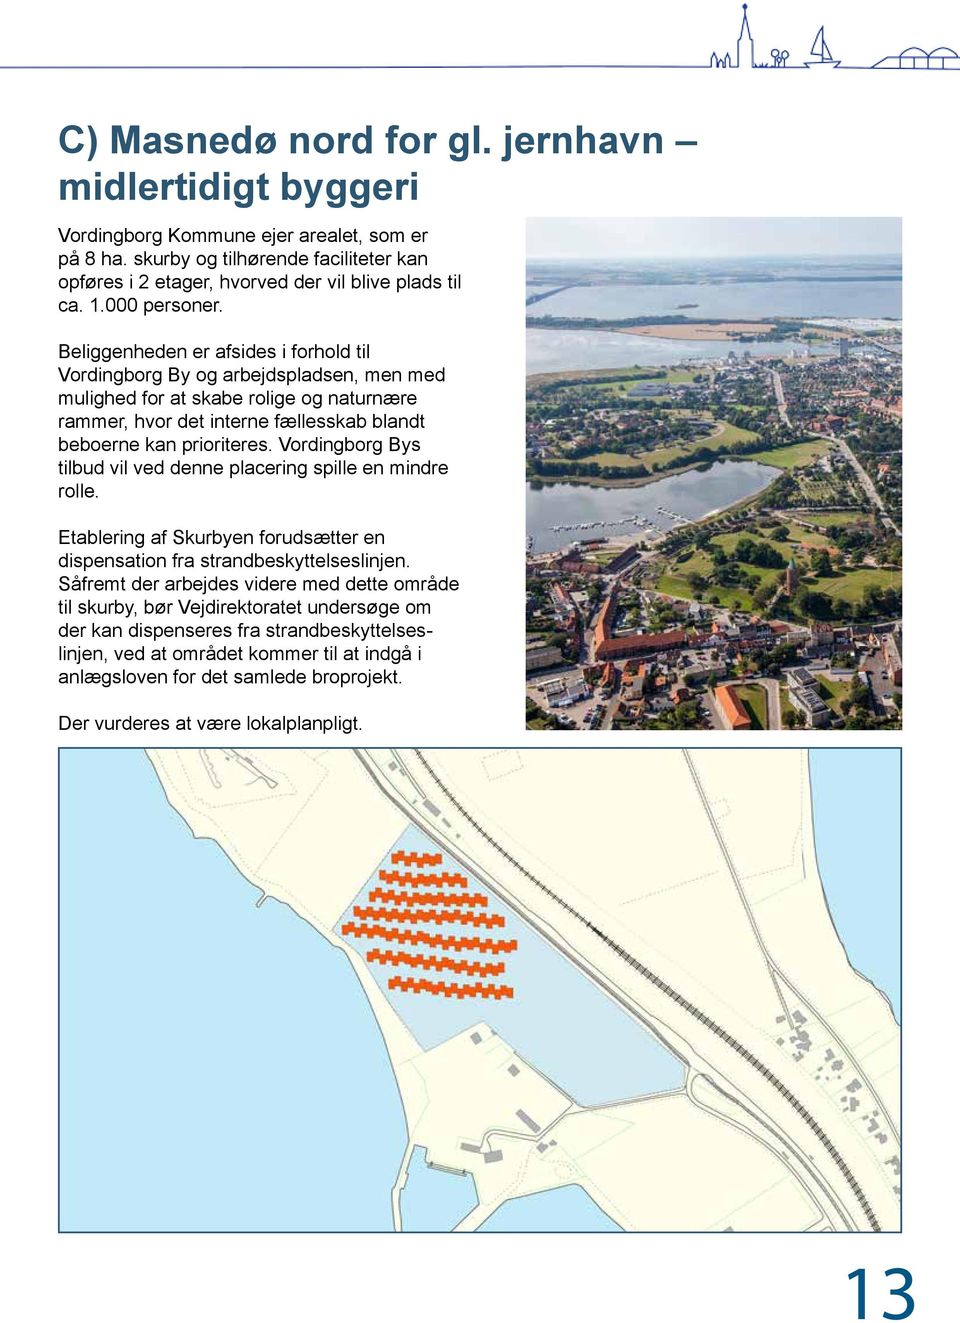 Beliggenheden er afsides i forhold til Vordingborg By og arbejdspladsen, men med mulighed for at skabe rolige og naturnære rammer, hvor det interne fællesskab blandt beboerne kan prioriteres.